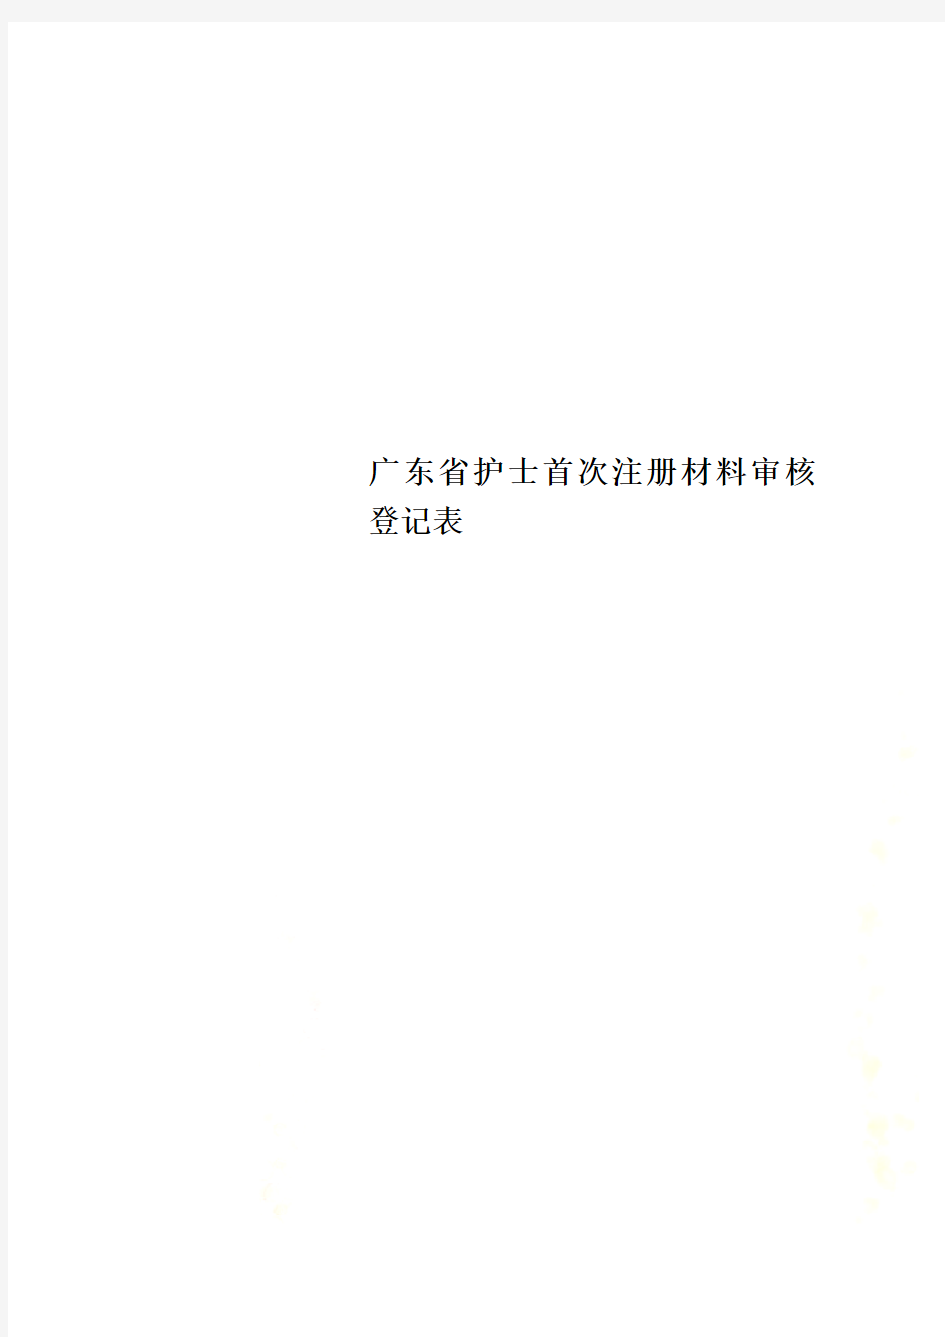 广东省护士首次注册材料审核登记表